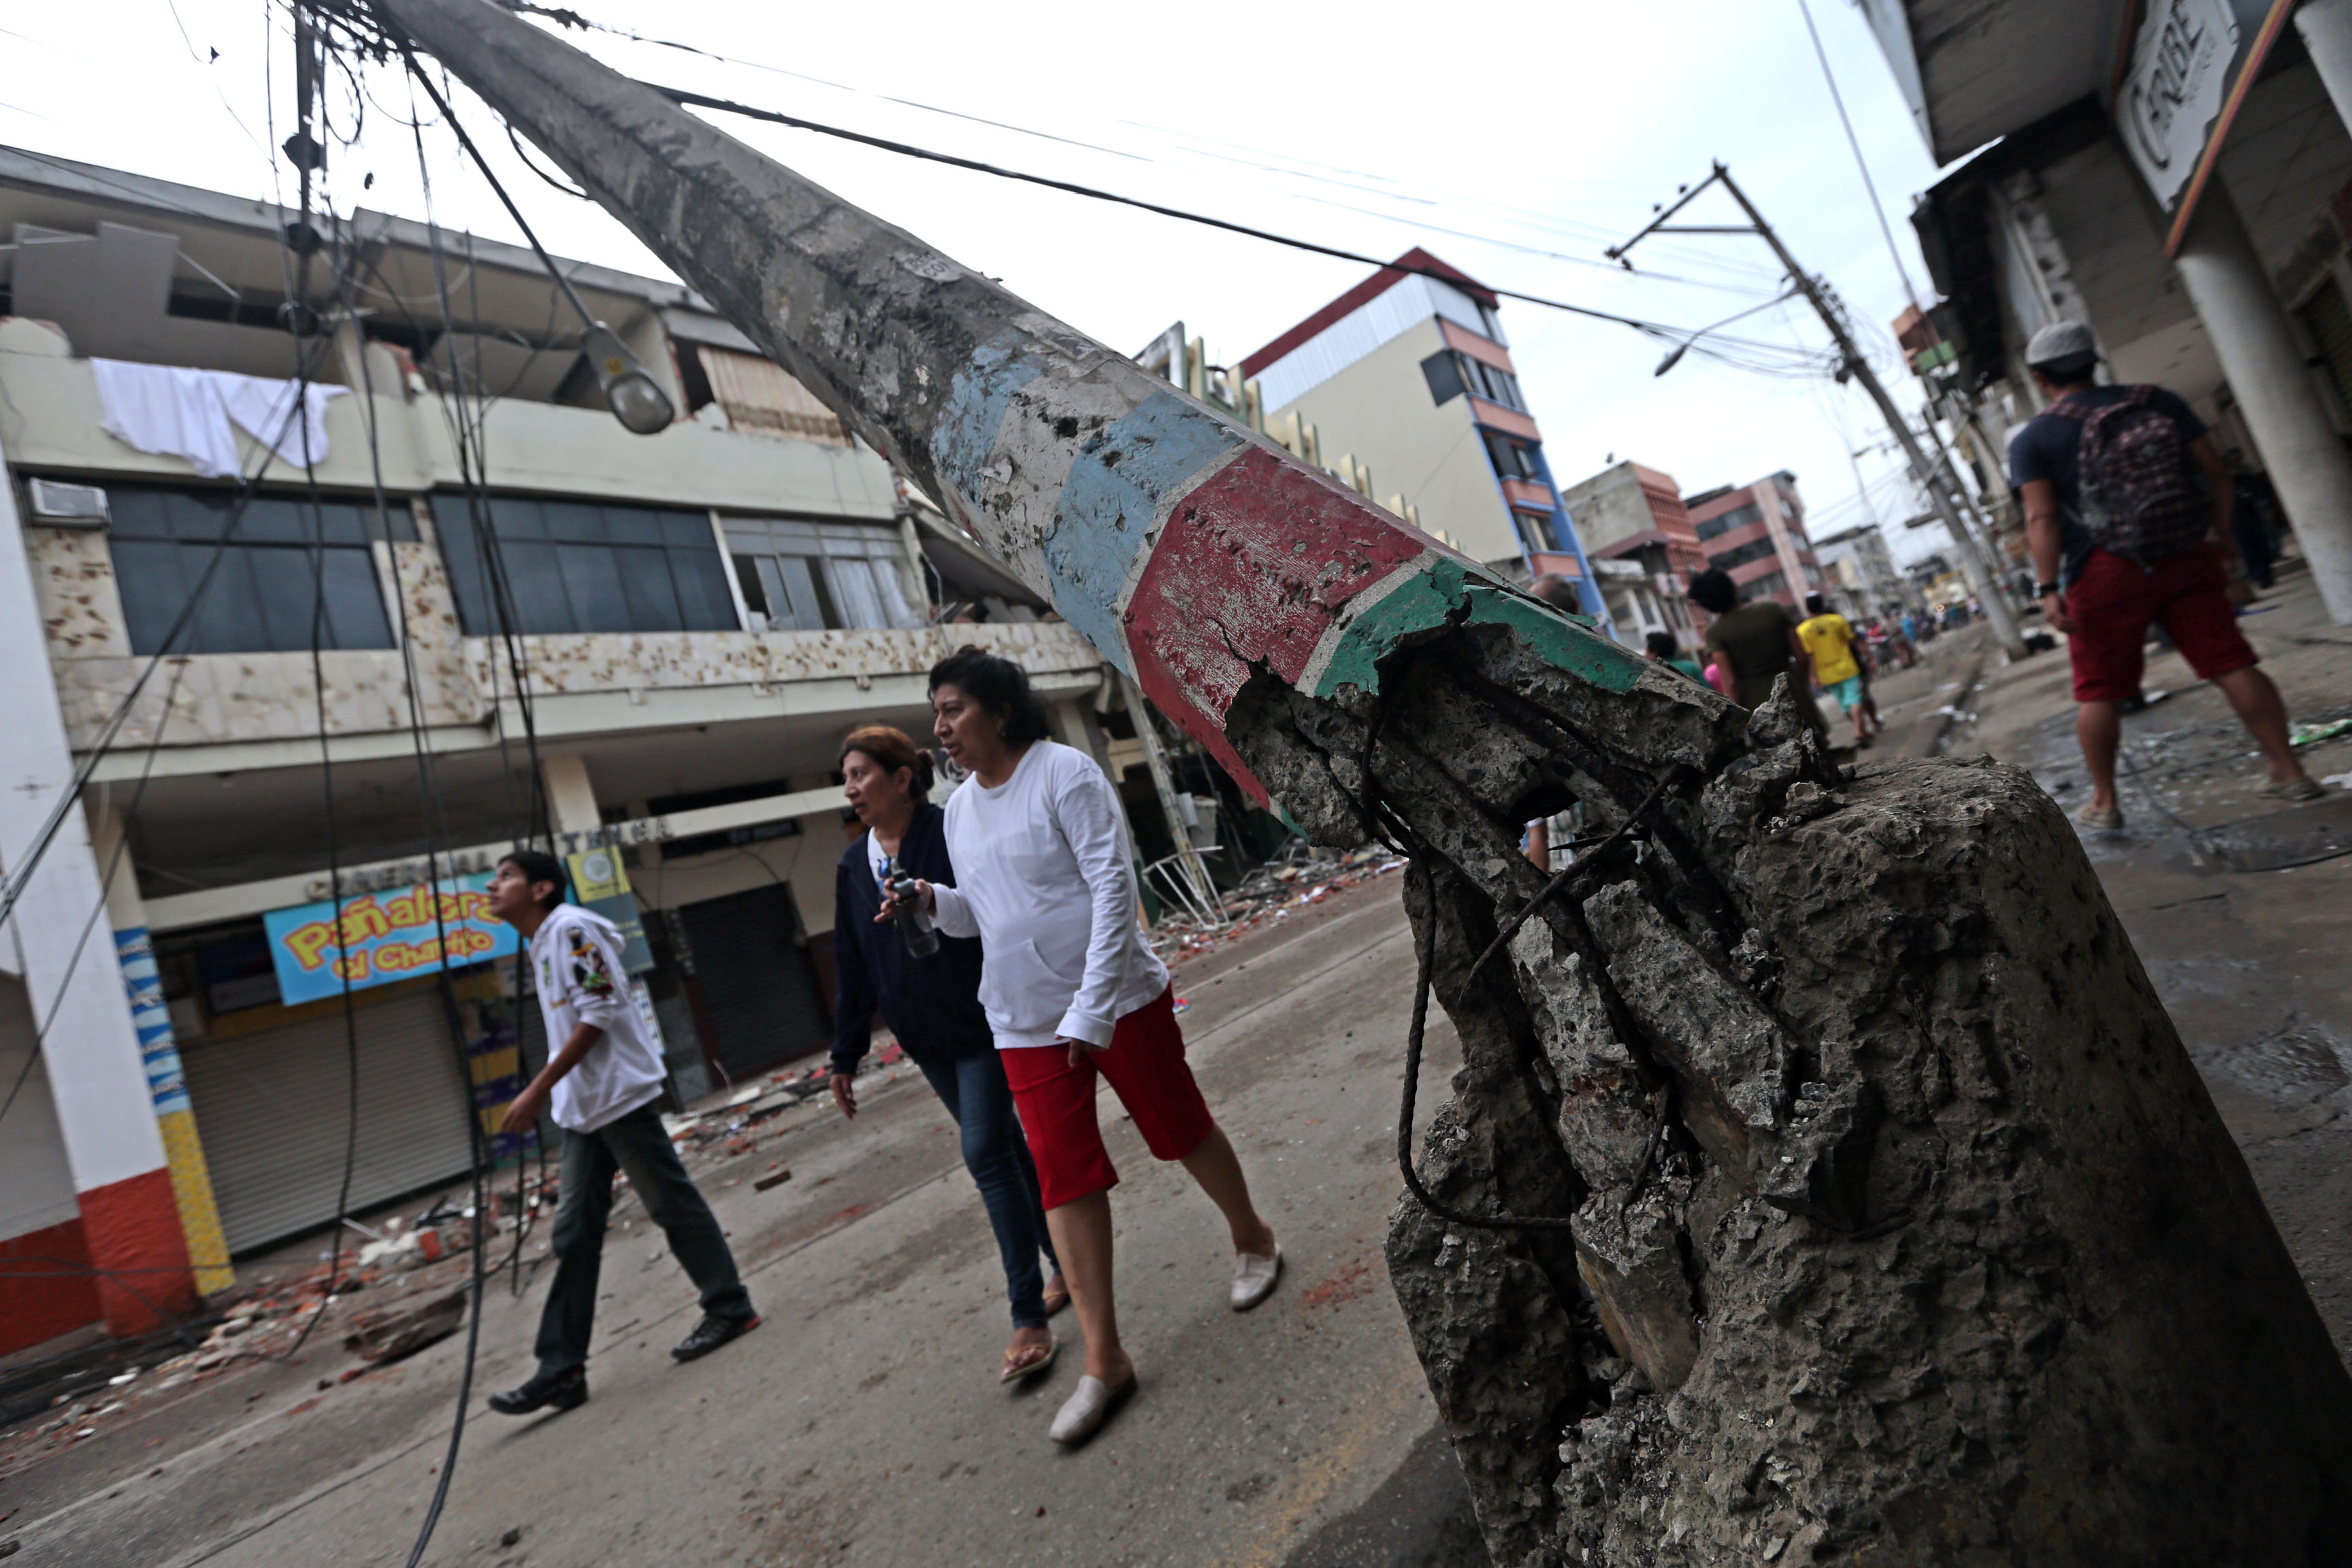 Imágenes y videos impresionantes sobre terremoto en Ecuador